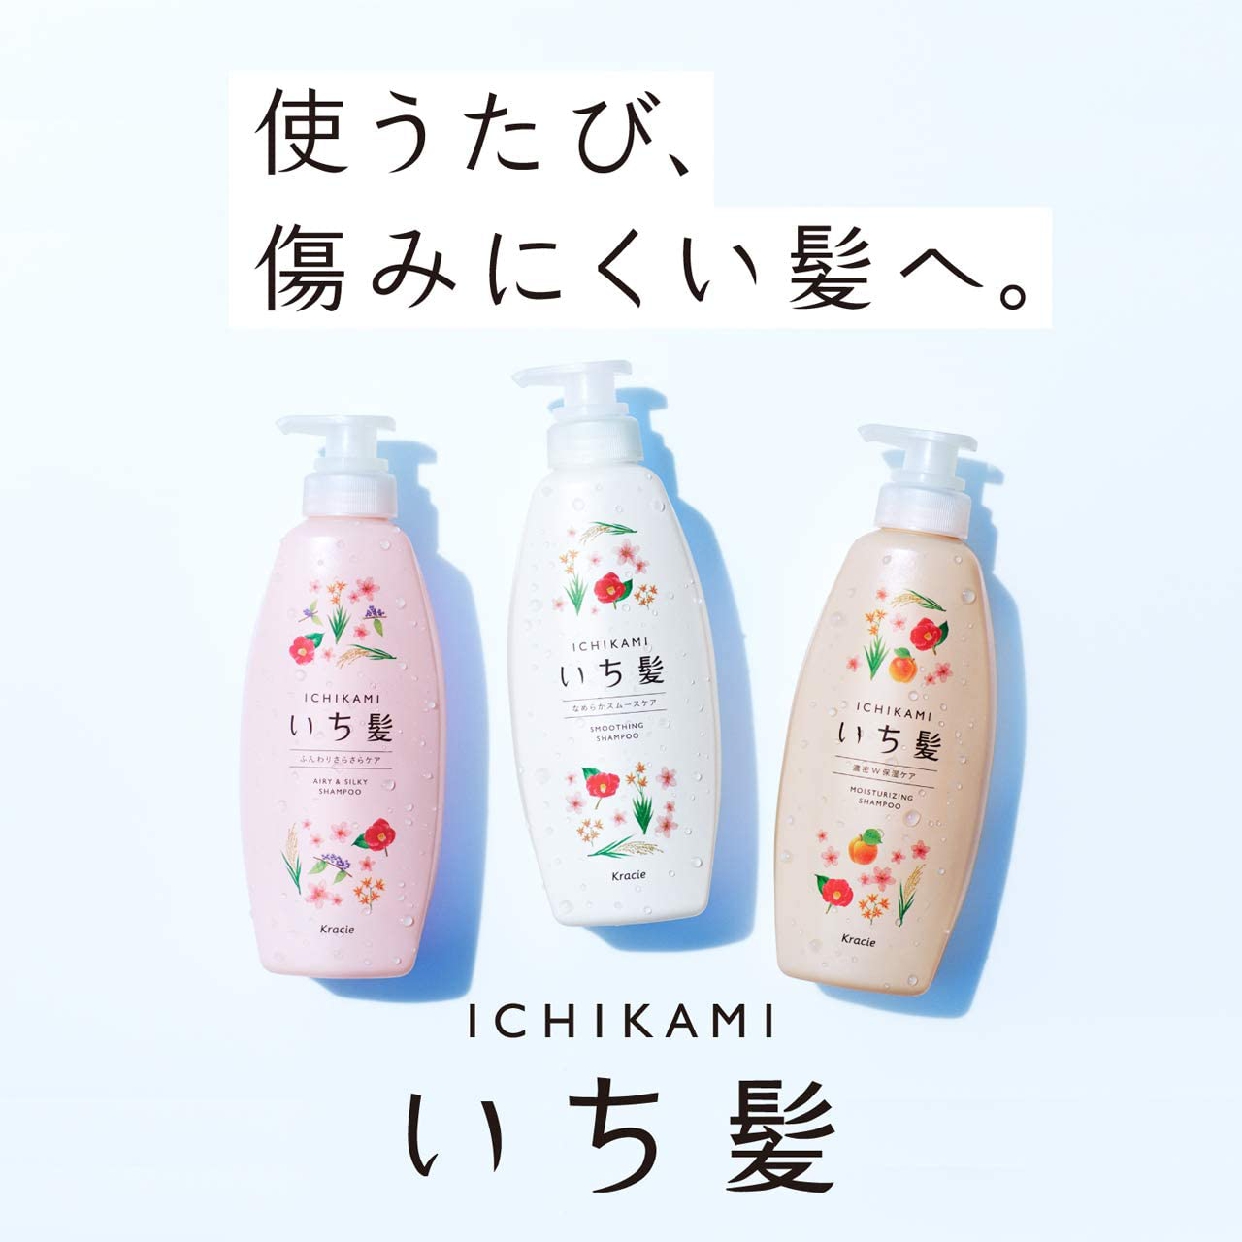 いち髪(ICHIKAMI) なめらかスムースケア コンディショナーの商品画像3 